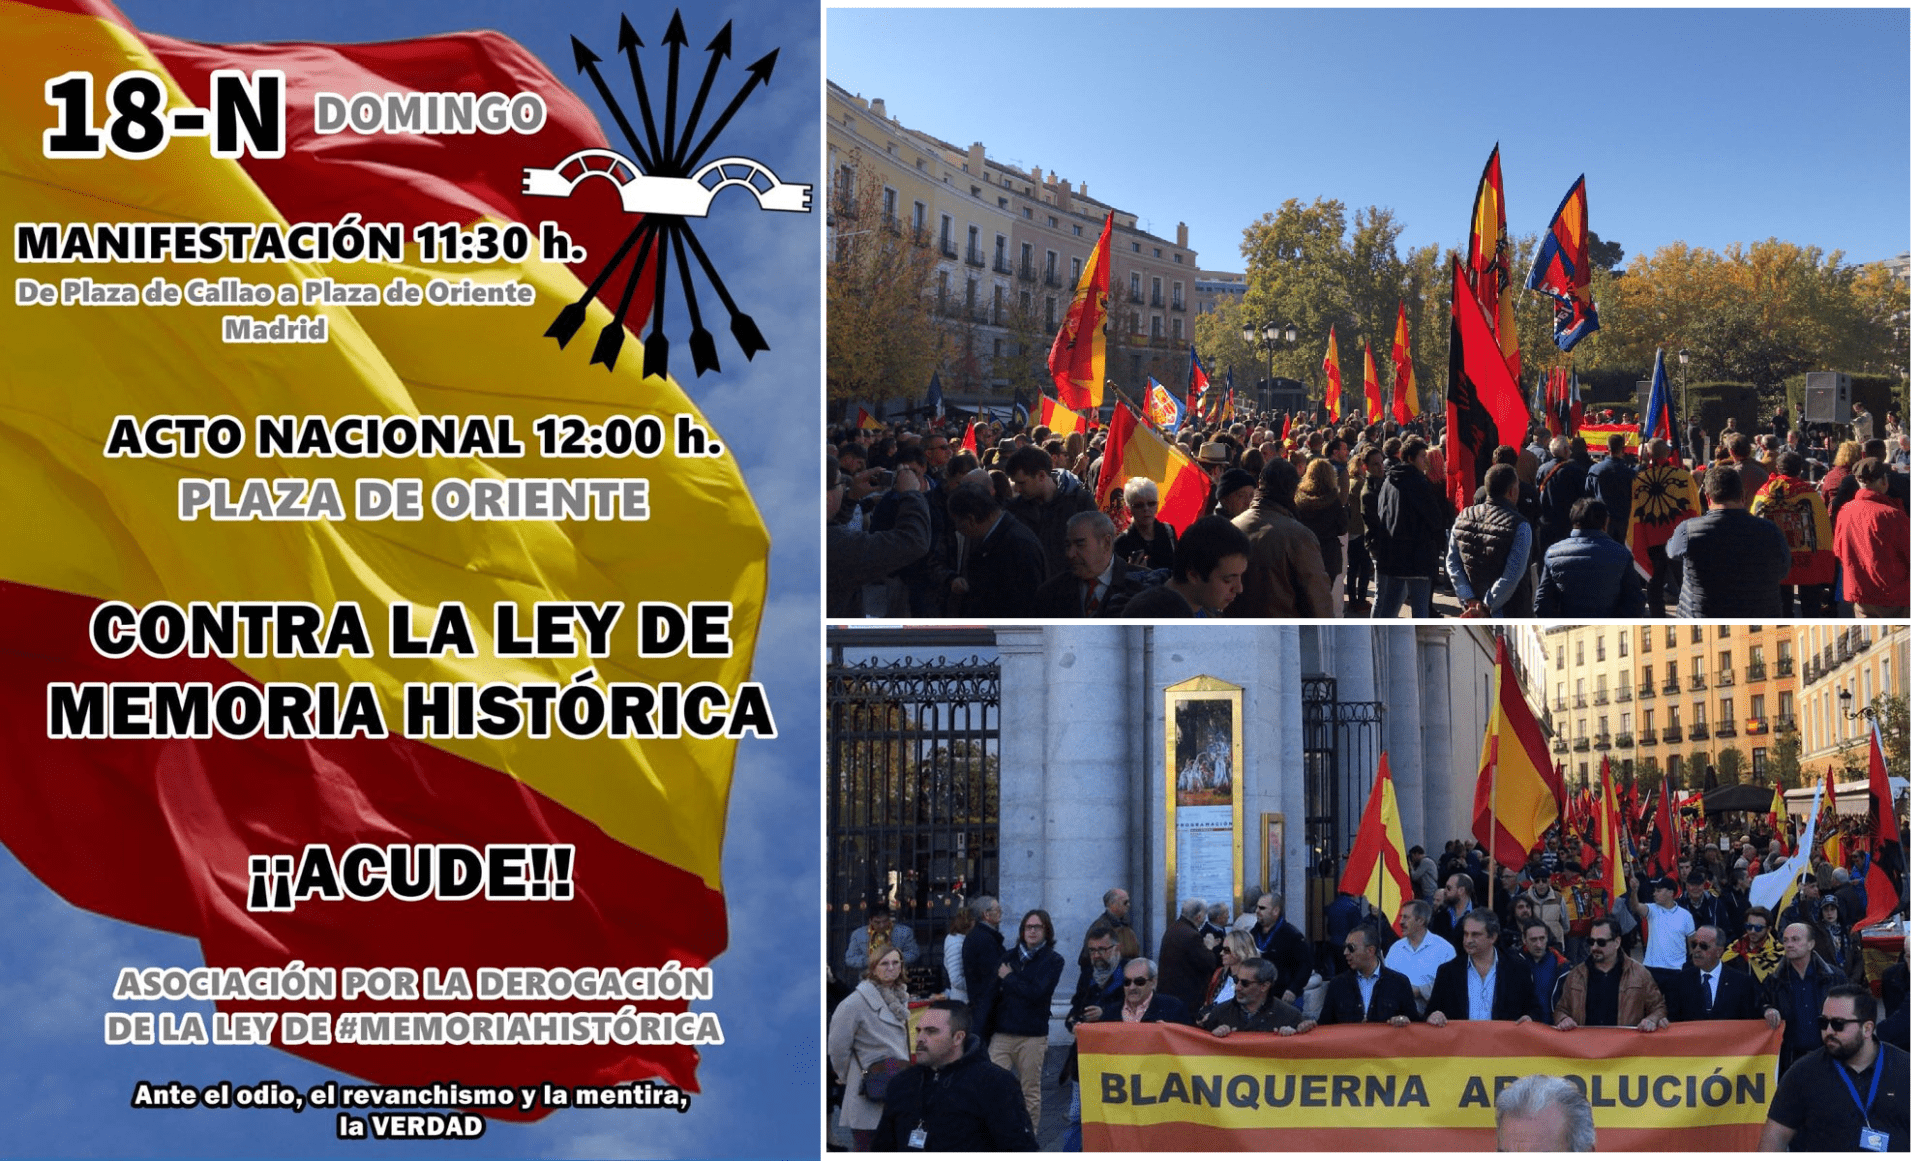 18-Nov: Pasacalles y acto político en plaza de Oriente